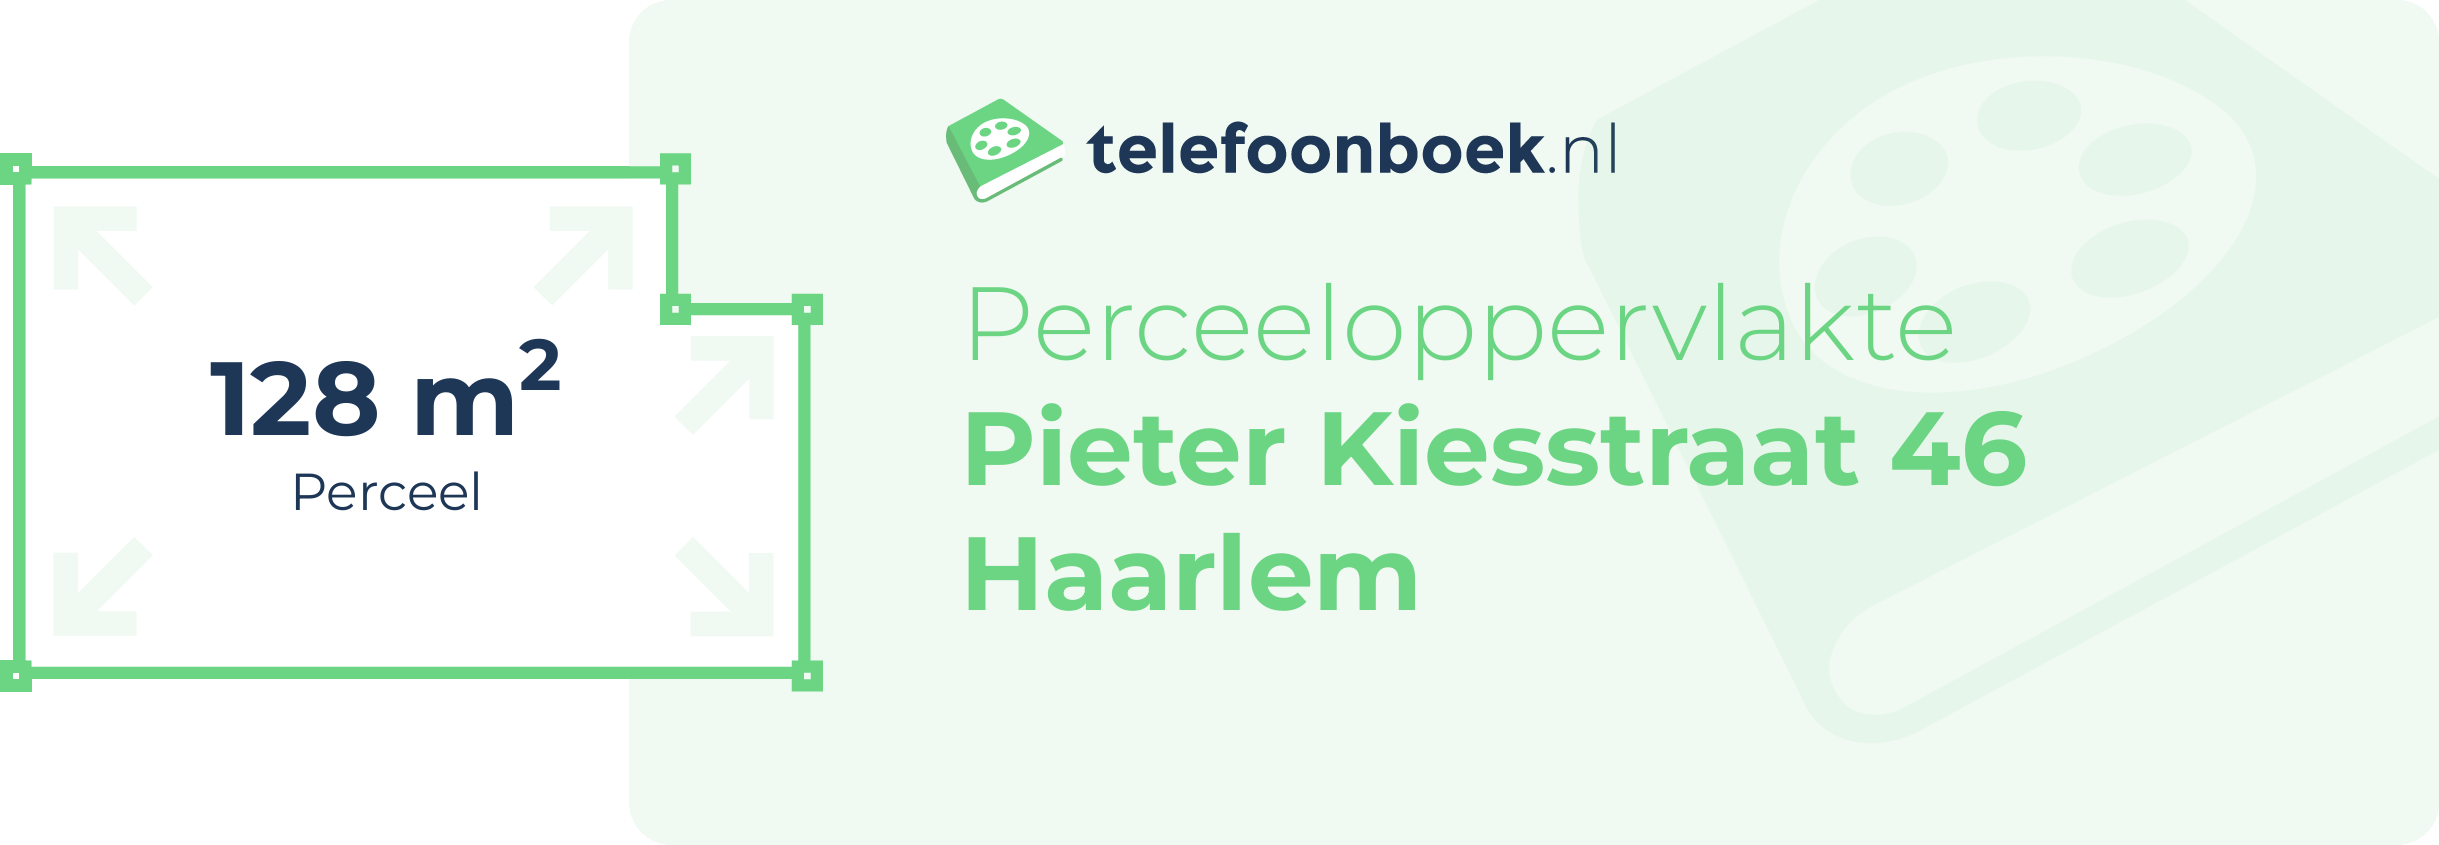 Perceeloppervlakte Pieter Kiesstraat 46 Haarlem